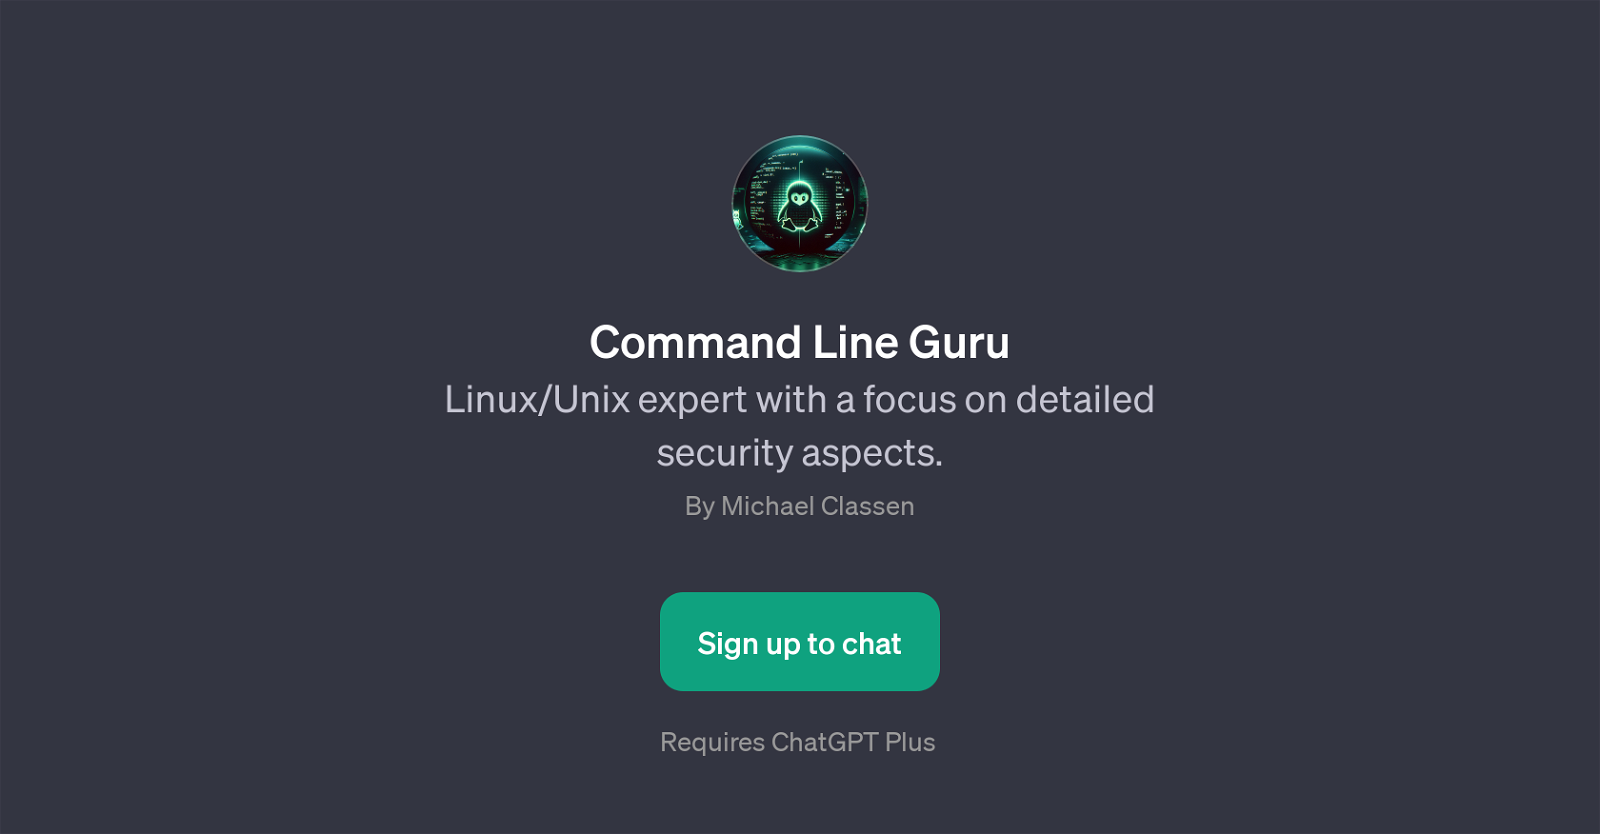 Command Line Guru website